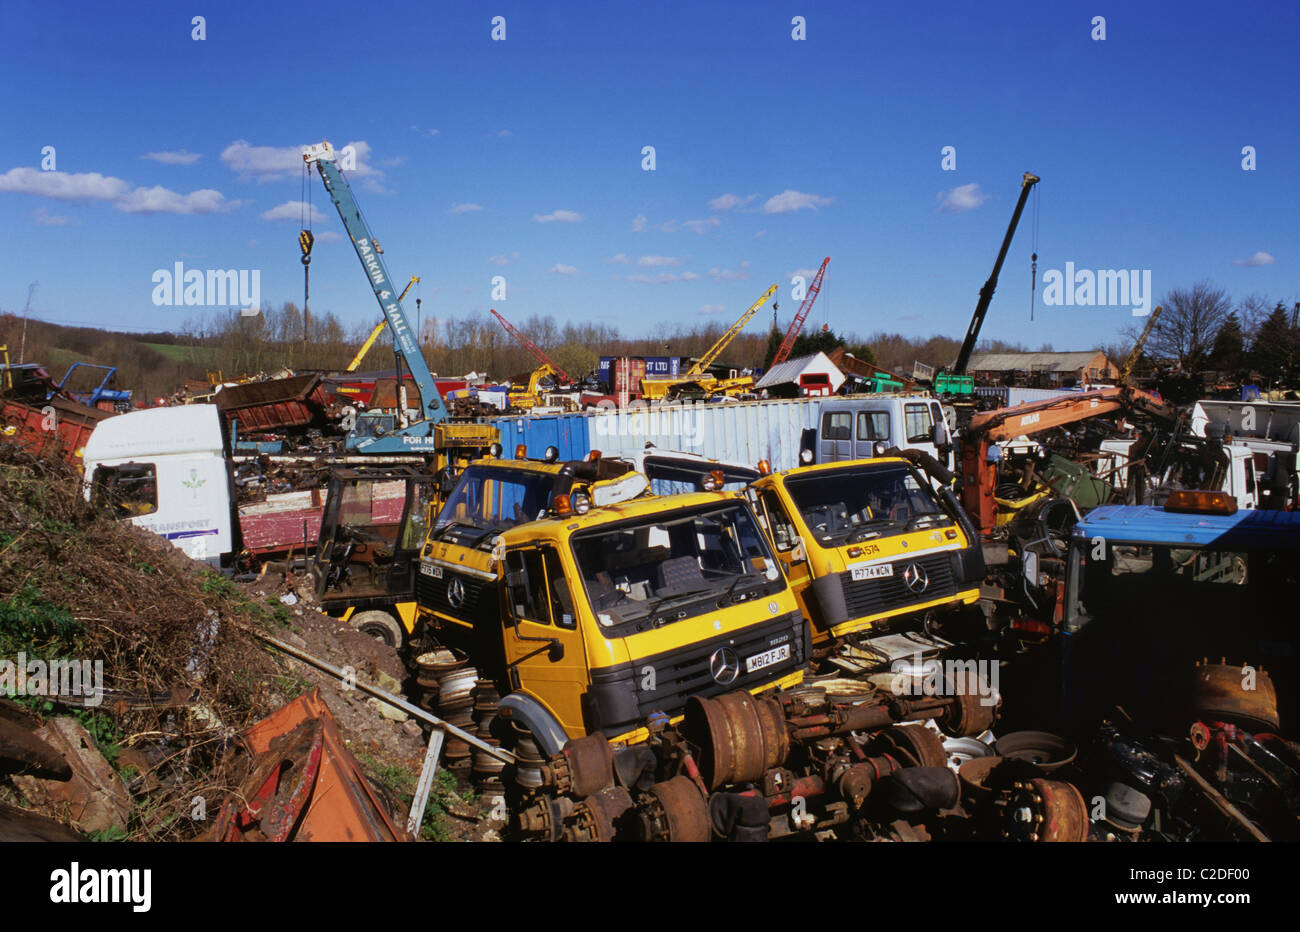 lorries and scrapmetal in scrapyard uk Stock Photo